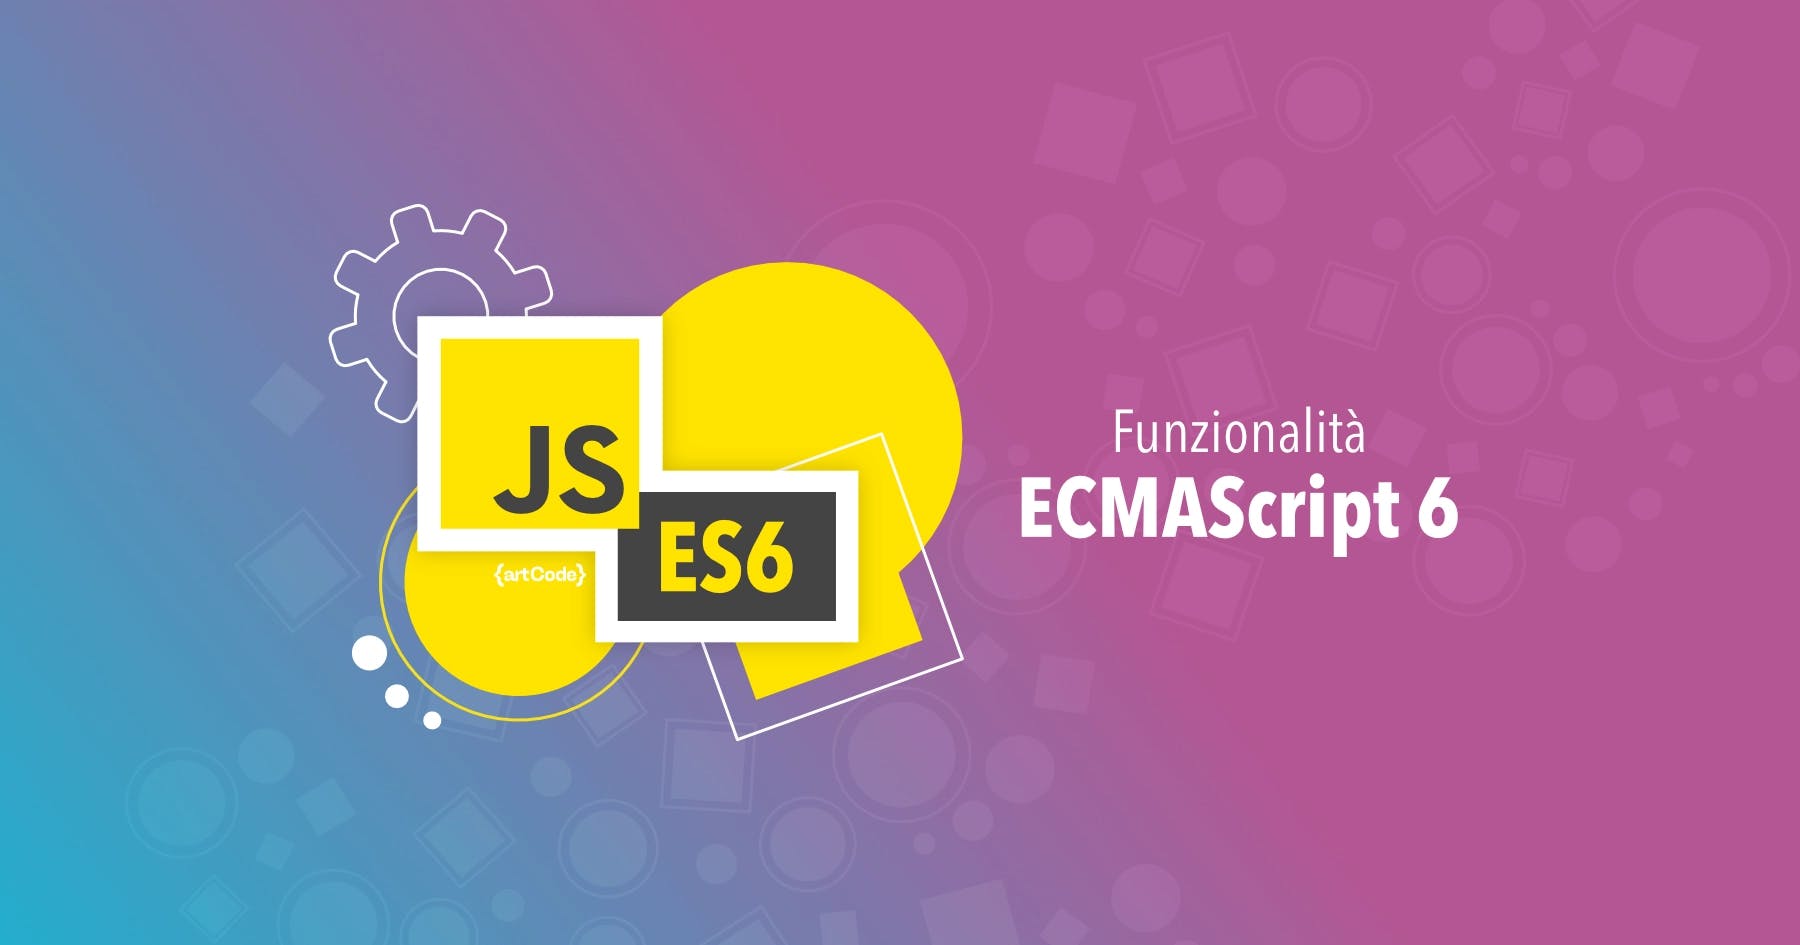 Introduciamo ES6 e le principali funzionalità di JavaScript